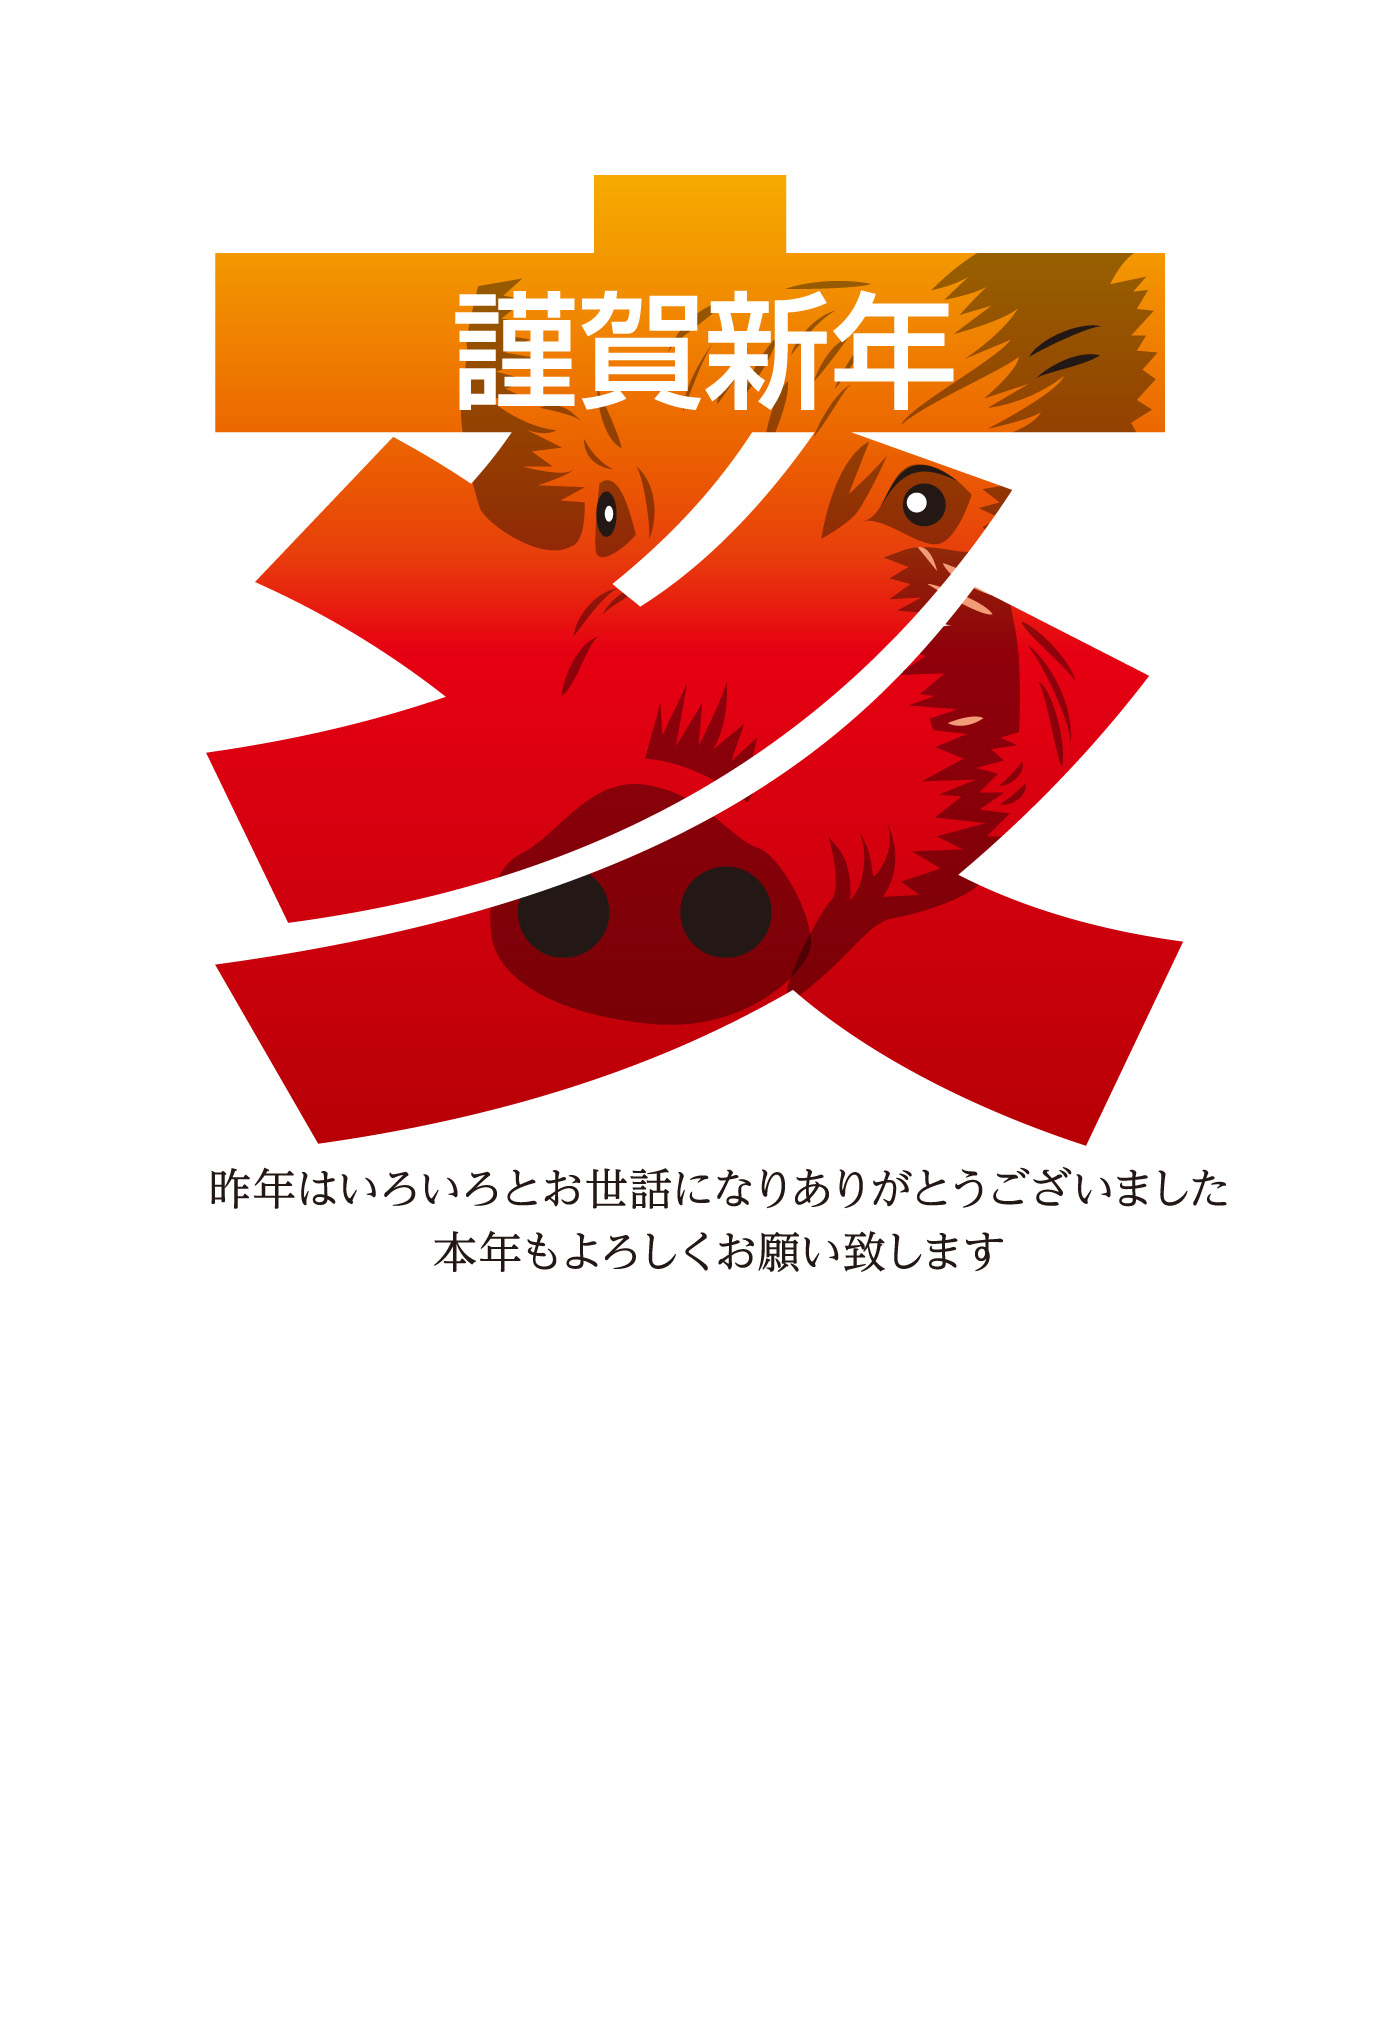 亥の文字の中のイノシシ 年賀状デザイン 19年無料イラストd02